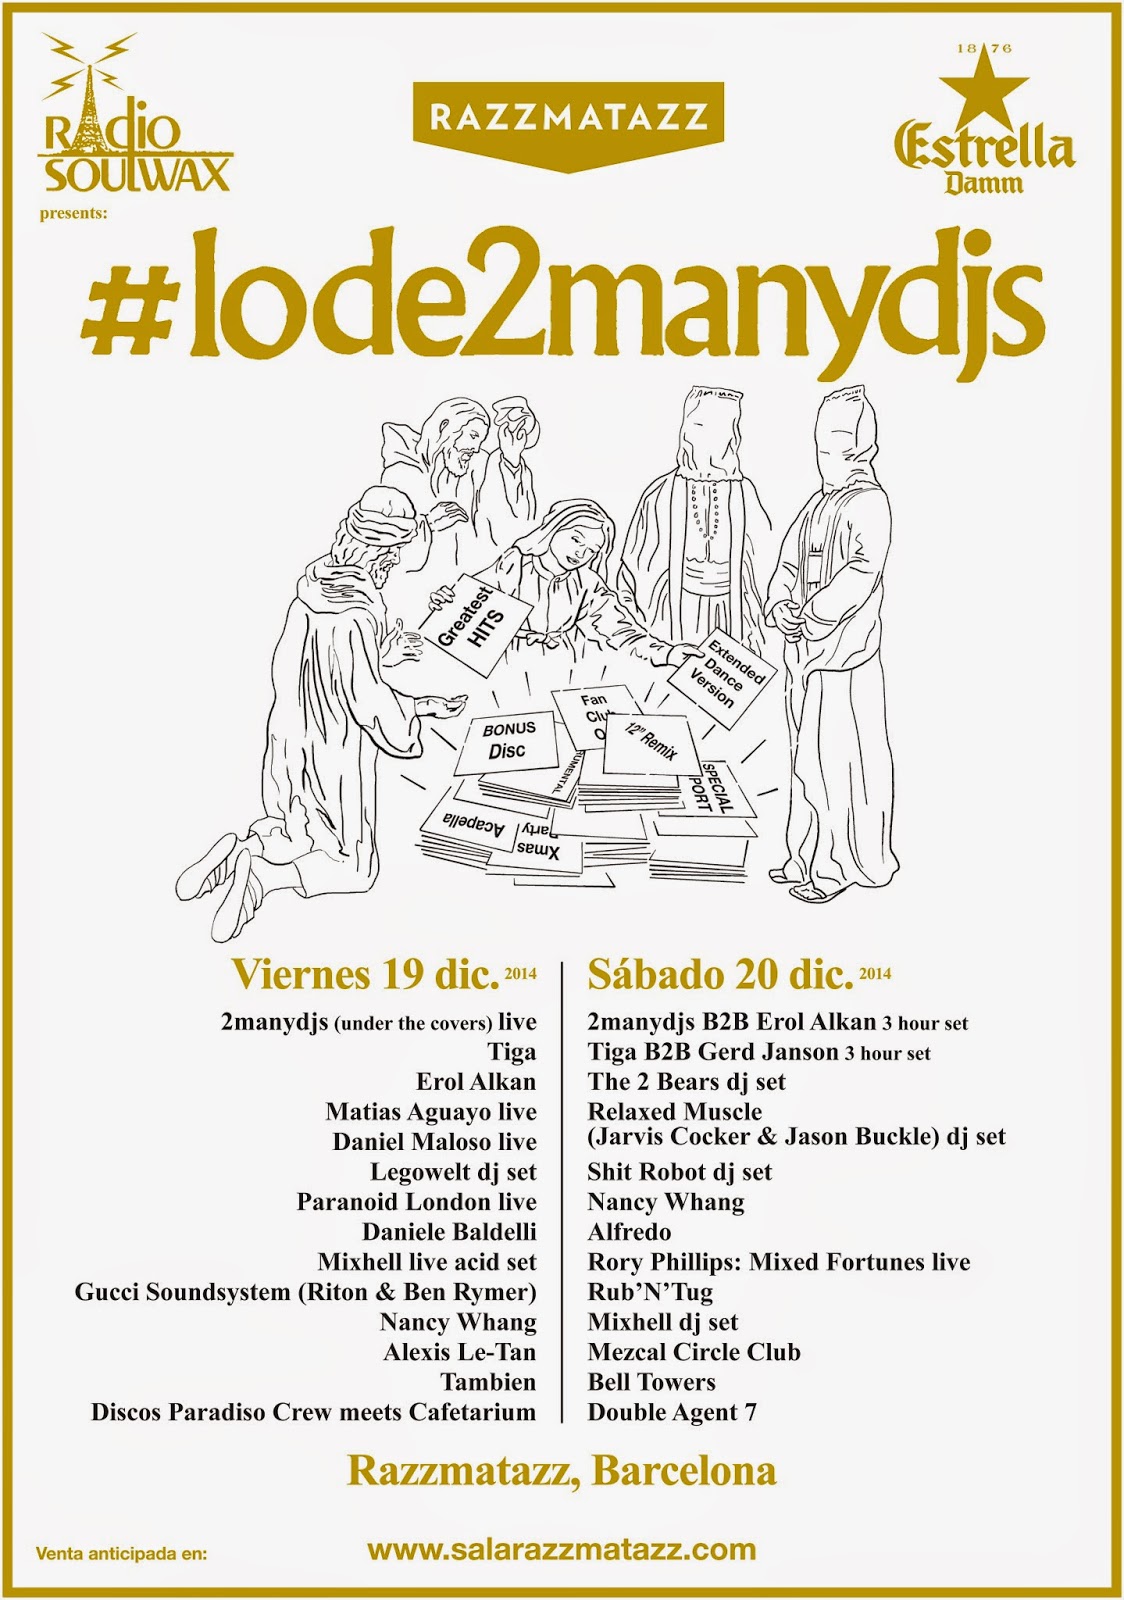 Razzmatazz despide su aniversario con #lode2manydjs